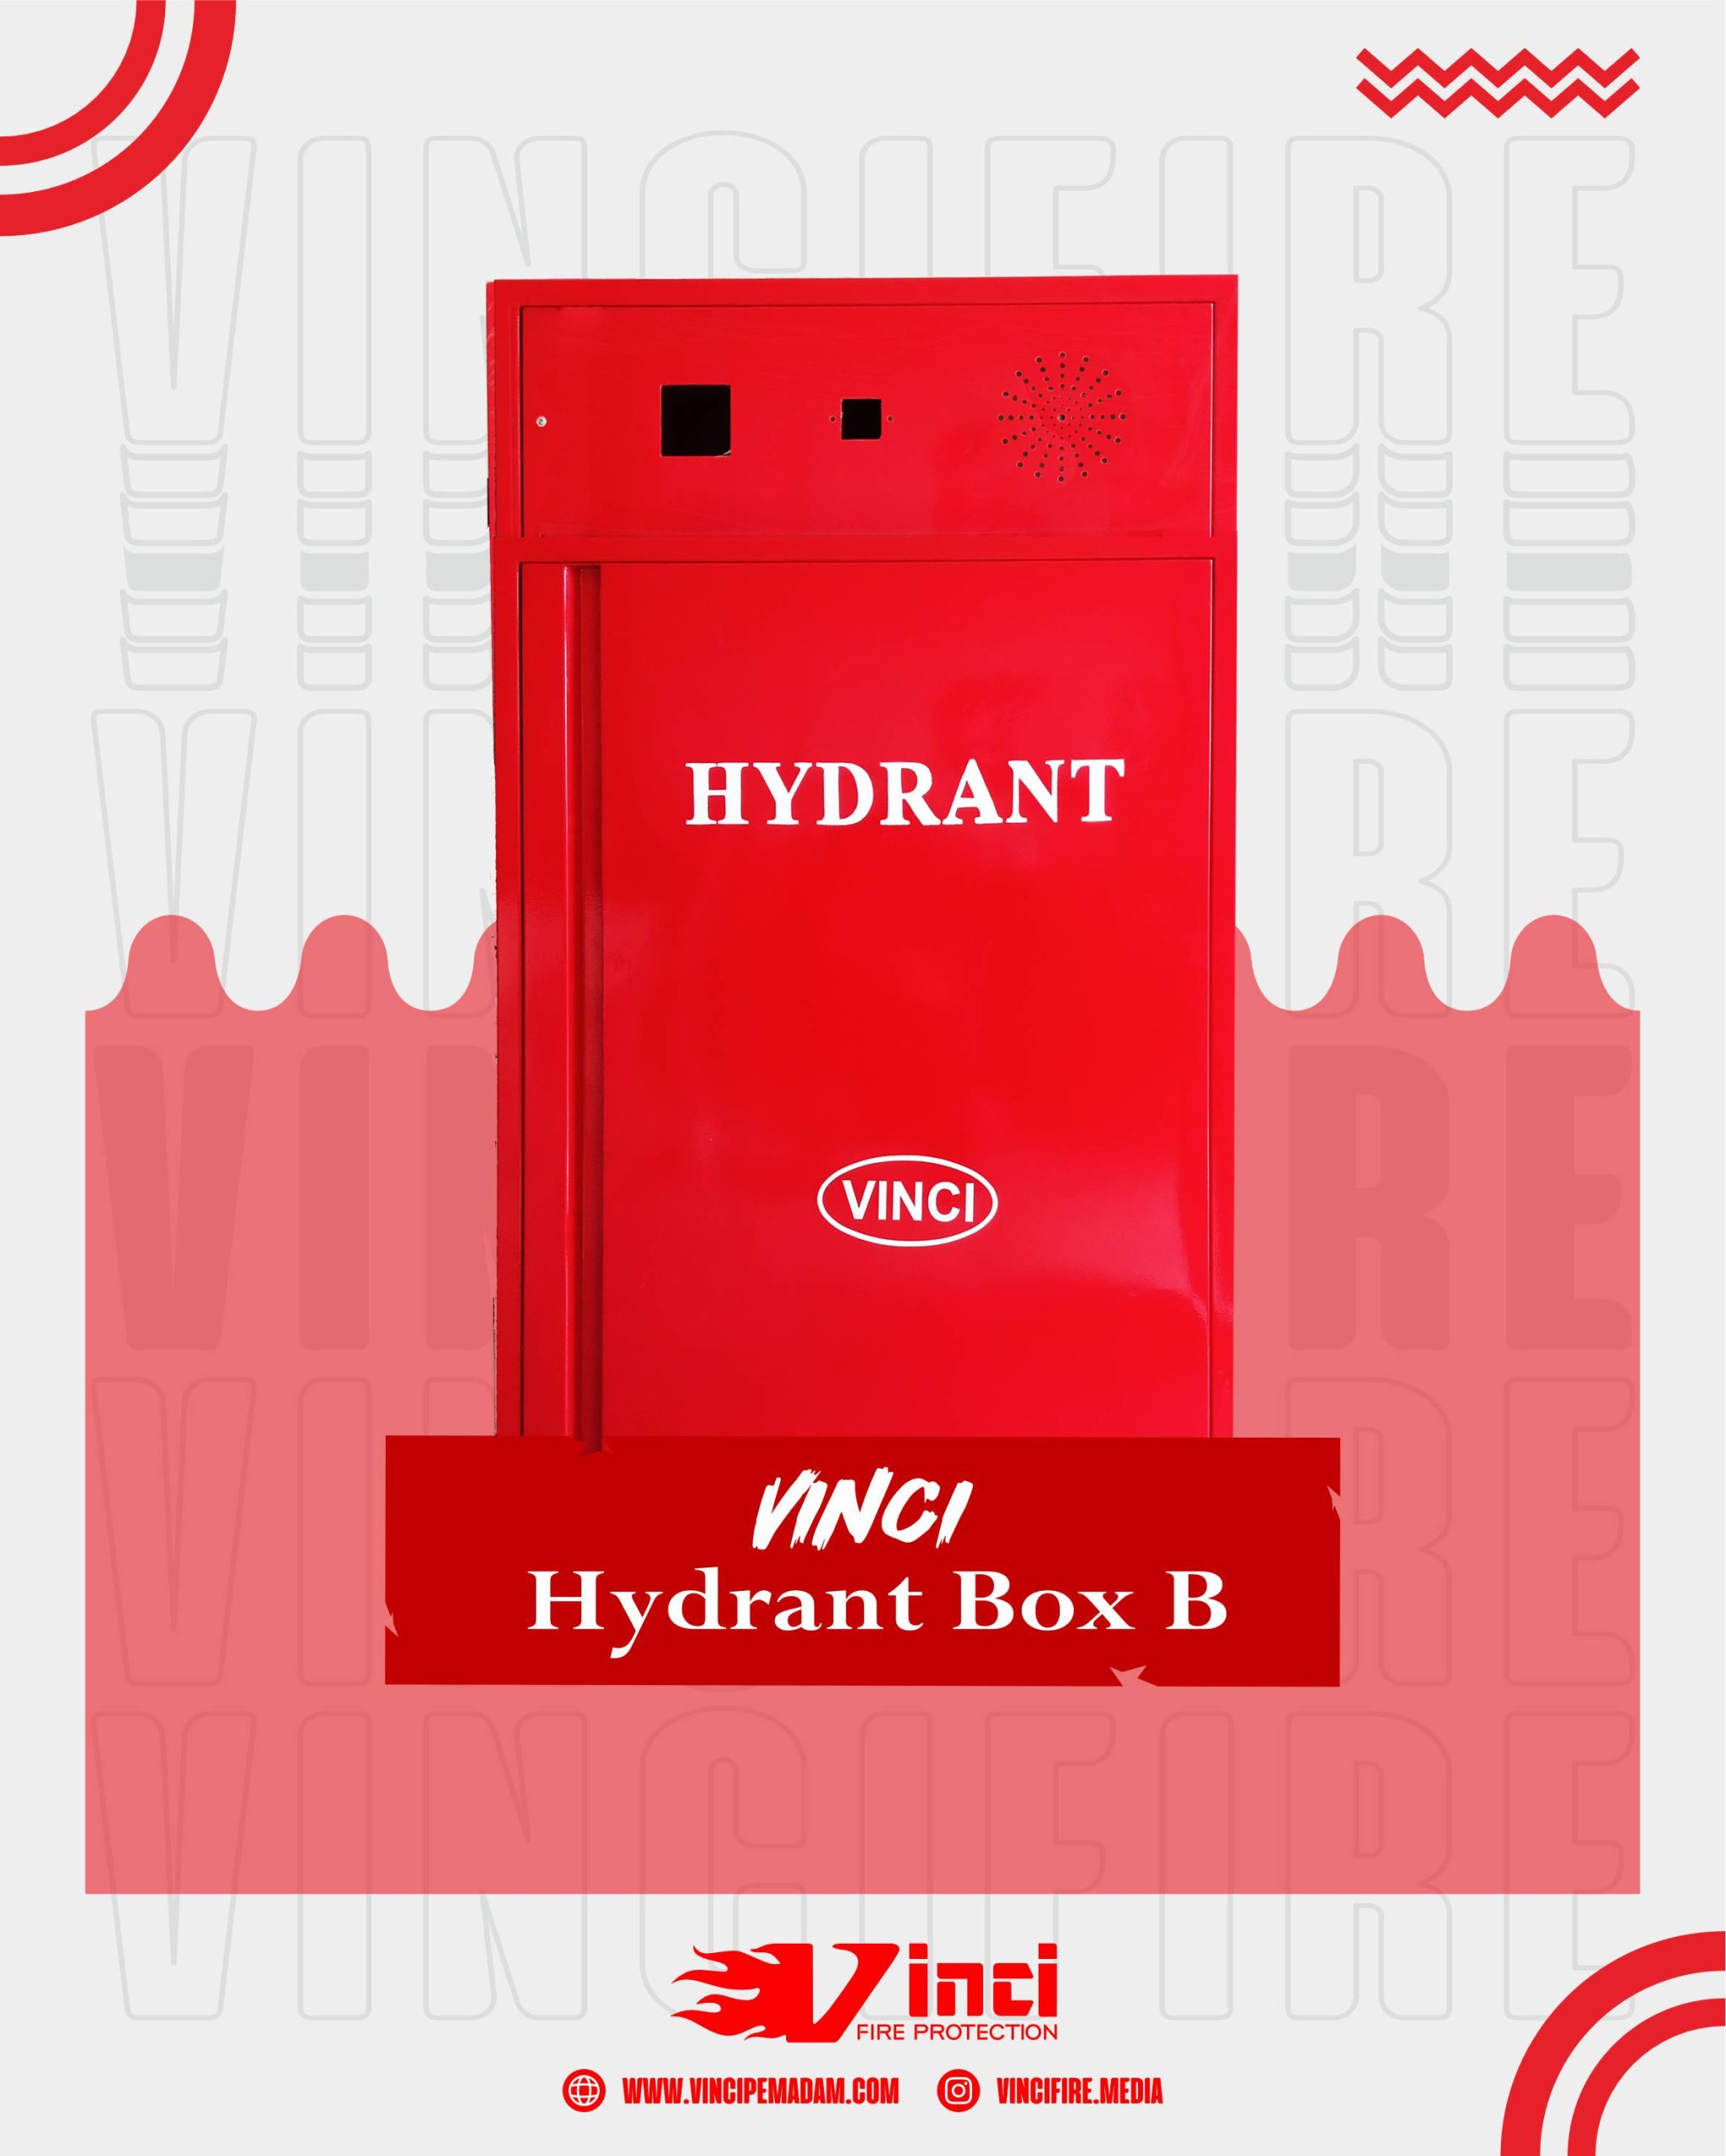 Hydrant Box B